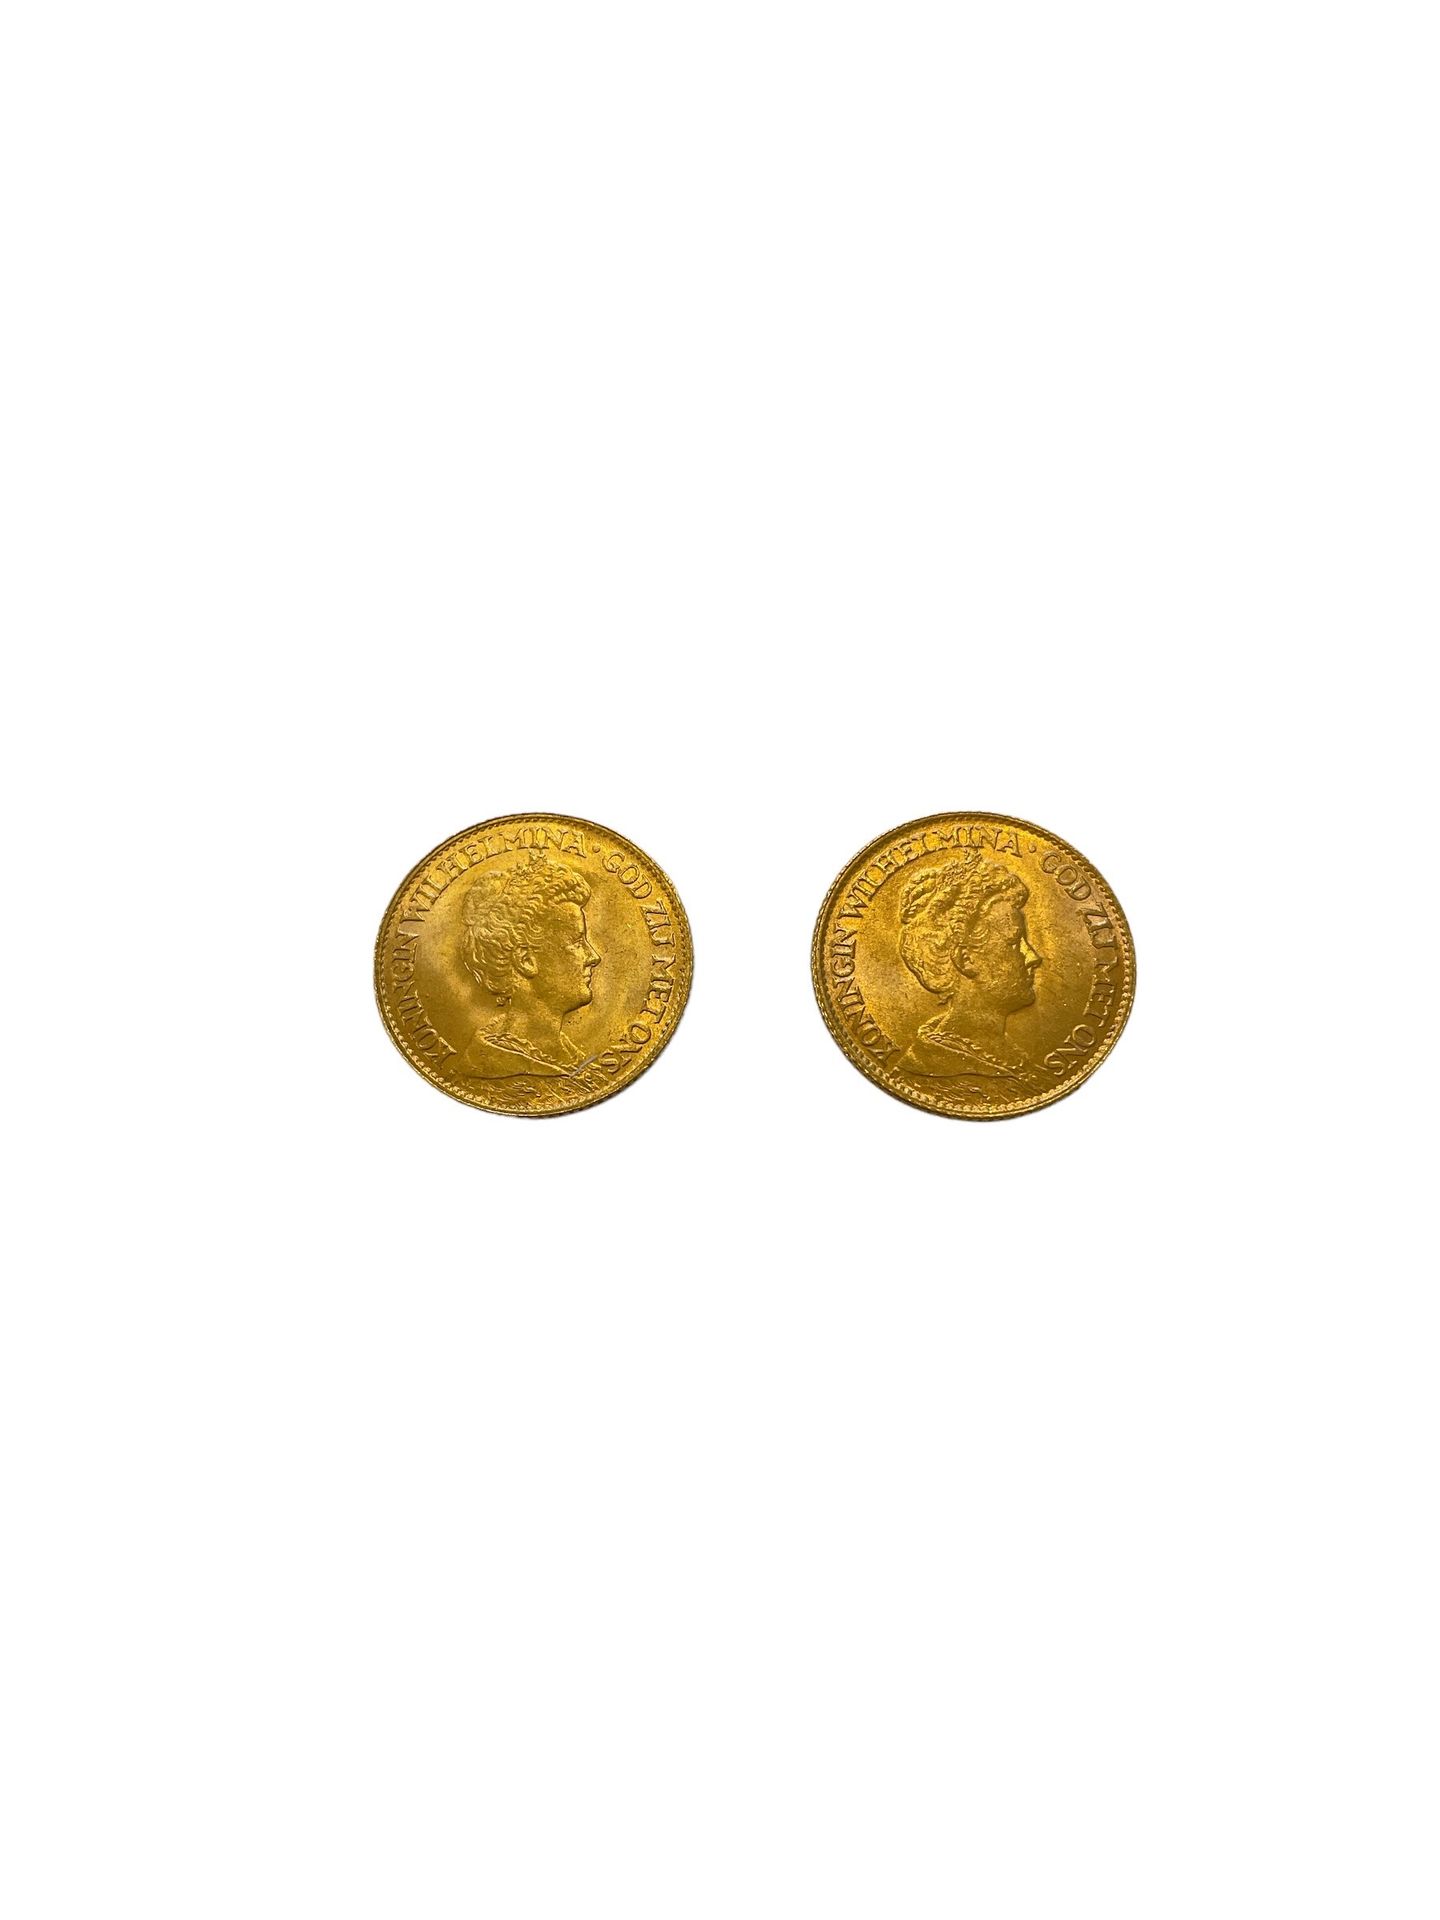 Null NIEDERLANDE
2 Münzen 10 Gulden Gold
Gewicht: 13.4 g